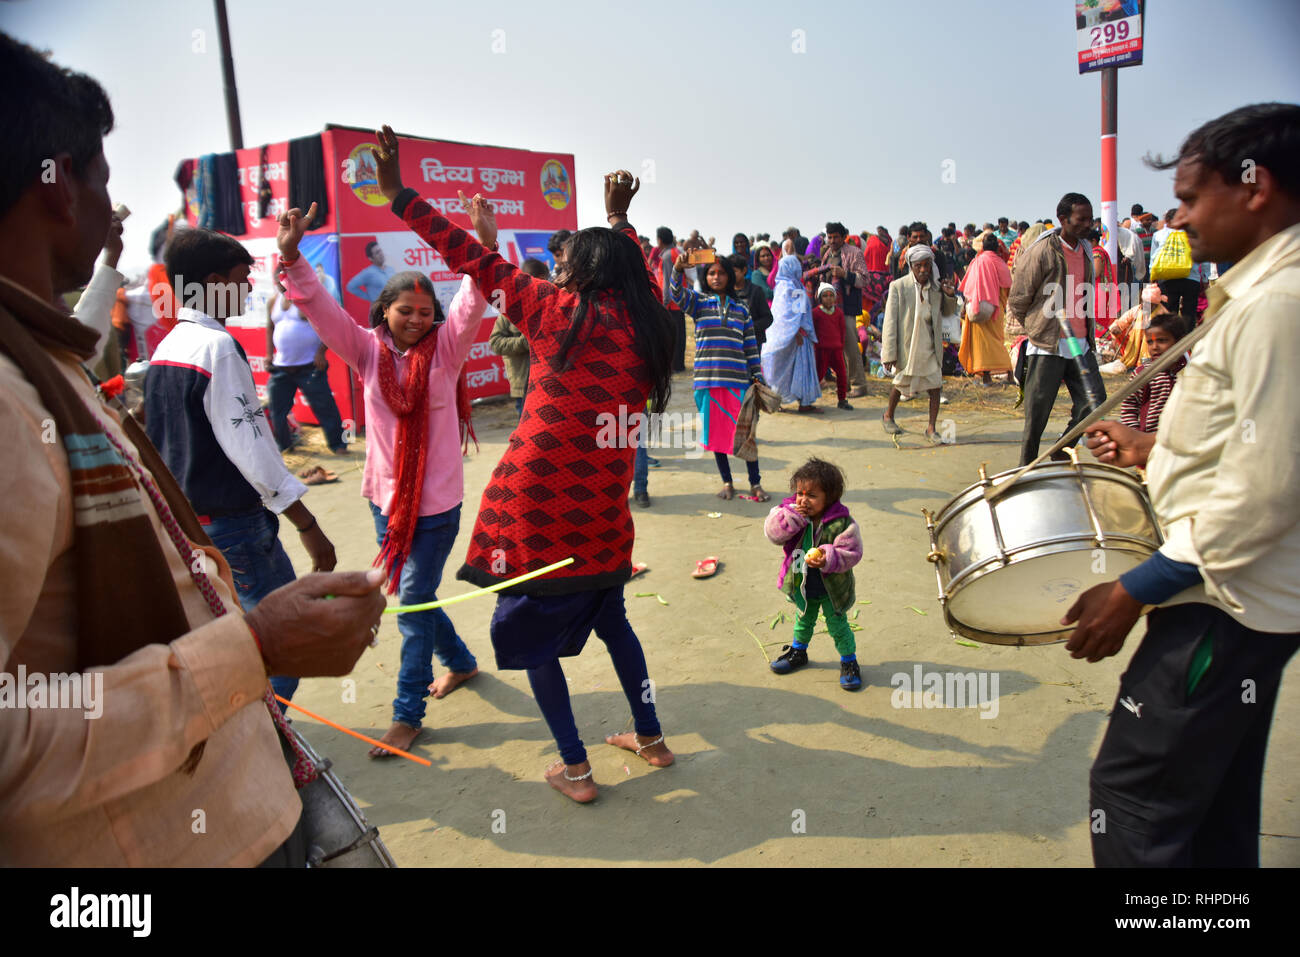 Pilger gesehen Tanzen auf den Beats von Musiker während der Wallfahrt. Kumbh Mela, einer der größten Gemeinde des Menschen auf der Erde. 3 crore Leute werden erwartet am Tag der zweiten Shahi Snan am 4. Februar und Arrangements sind entsprechend in Prayagraj gemacht. Stockfoto